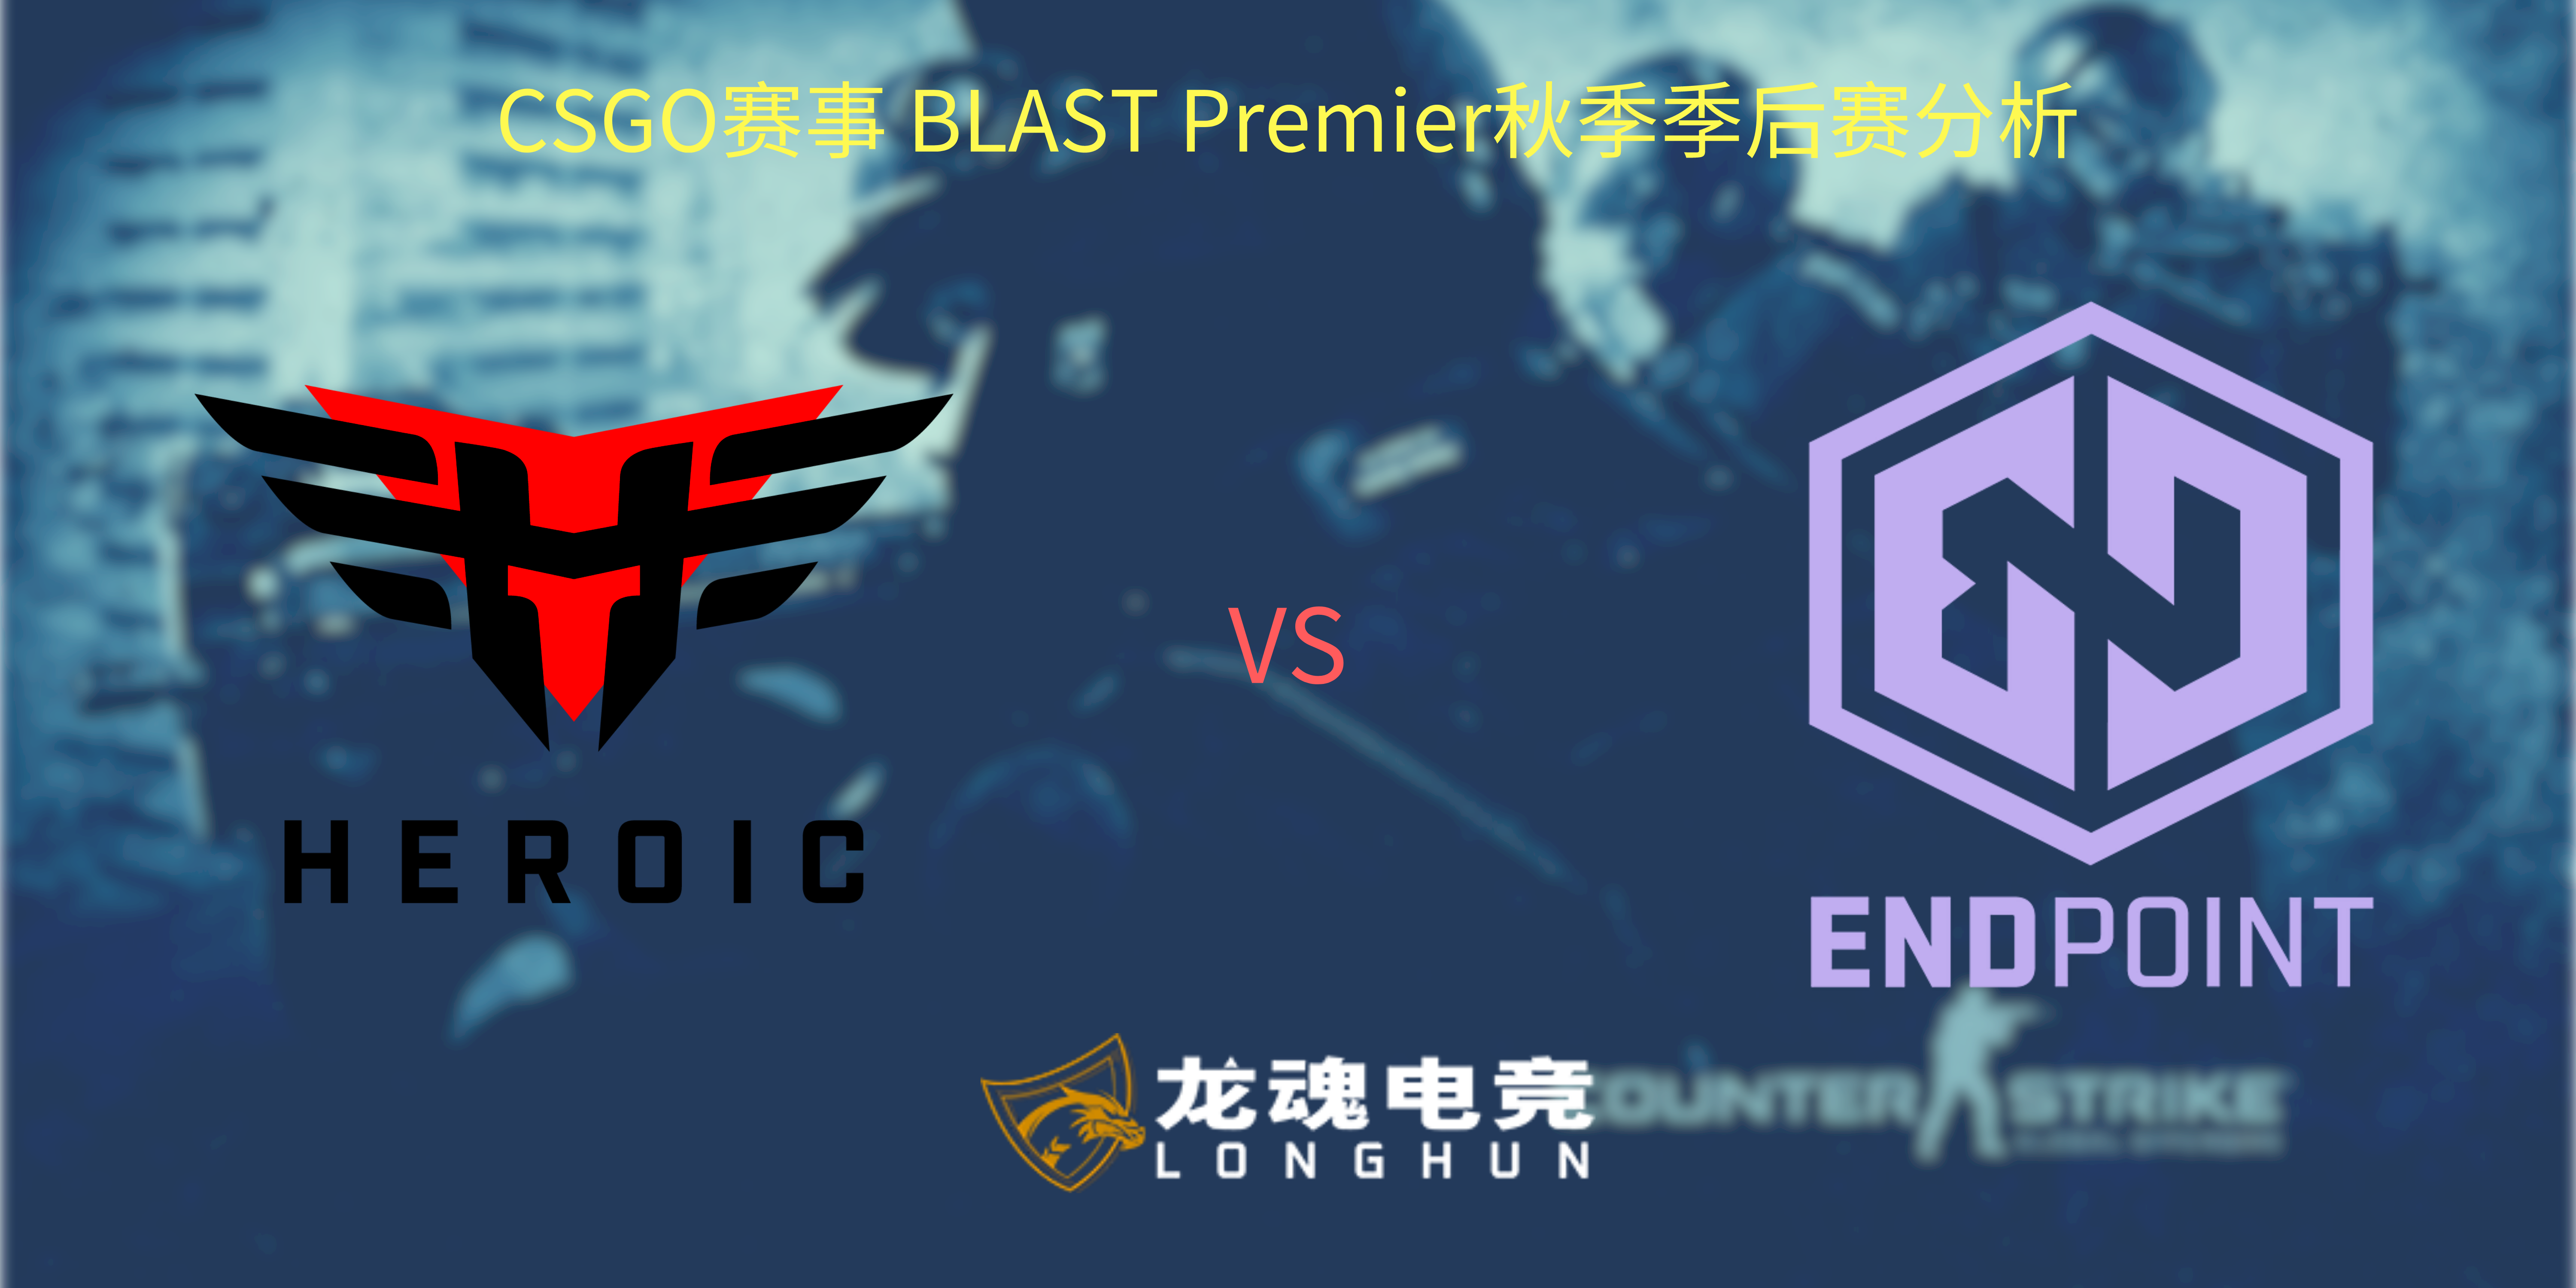  龙魂电竞-CSGO赛事BLAST秋季赛季后赛Heroic VS Endpoint 赛事分析 | 龙魂电竞